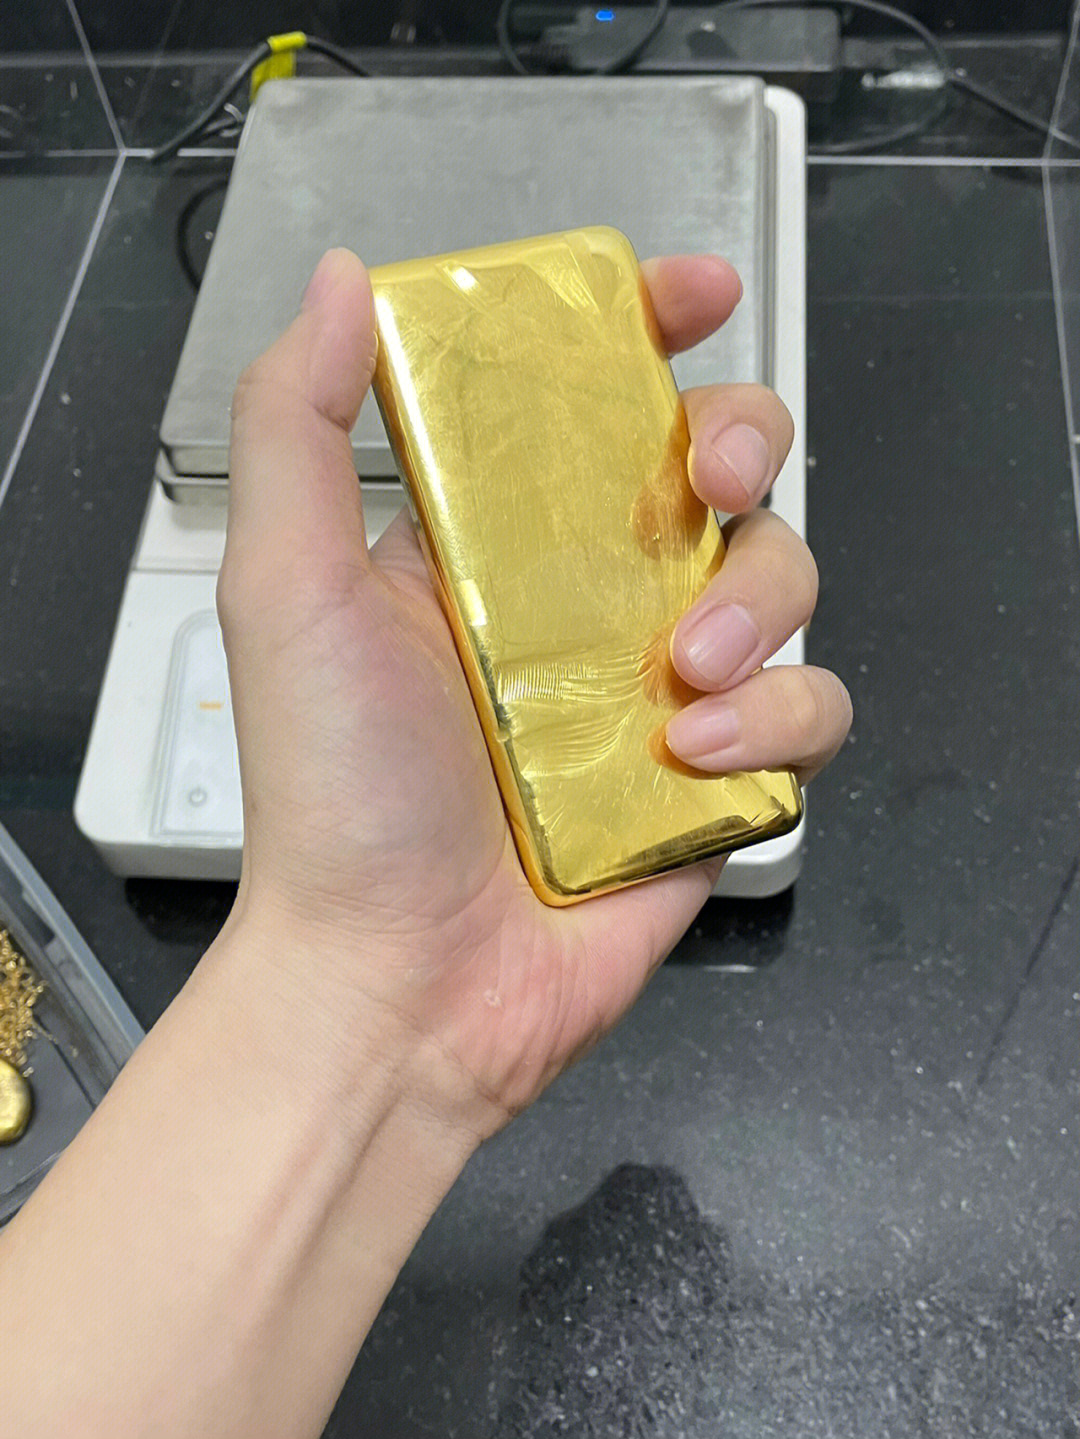 塔尔寺金塔860公斤黄金图片